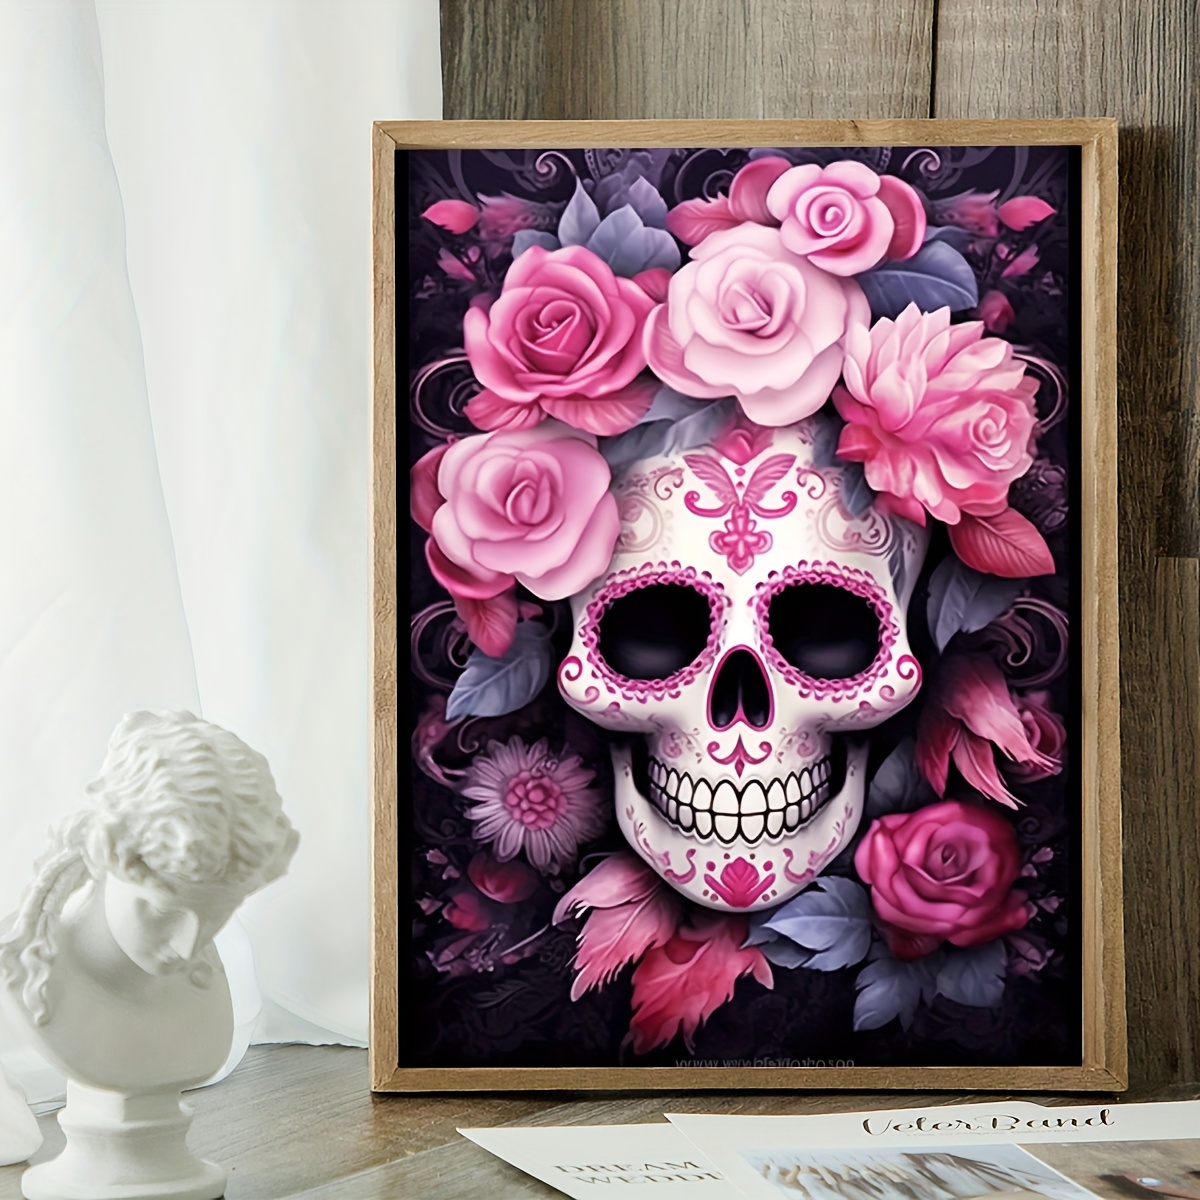  Diamond Art Painting Kit for Adults - Skull Flower